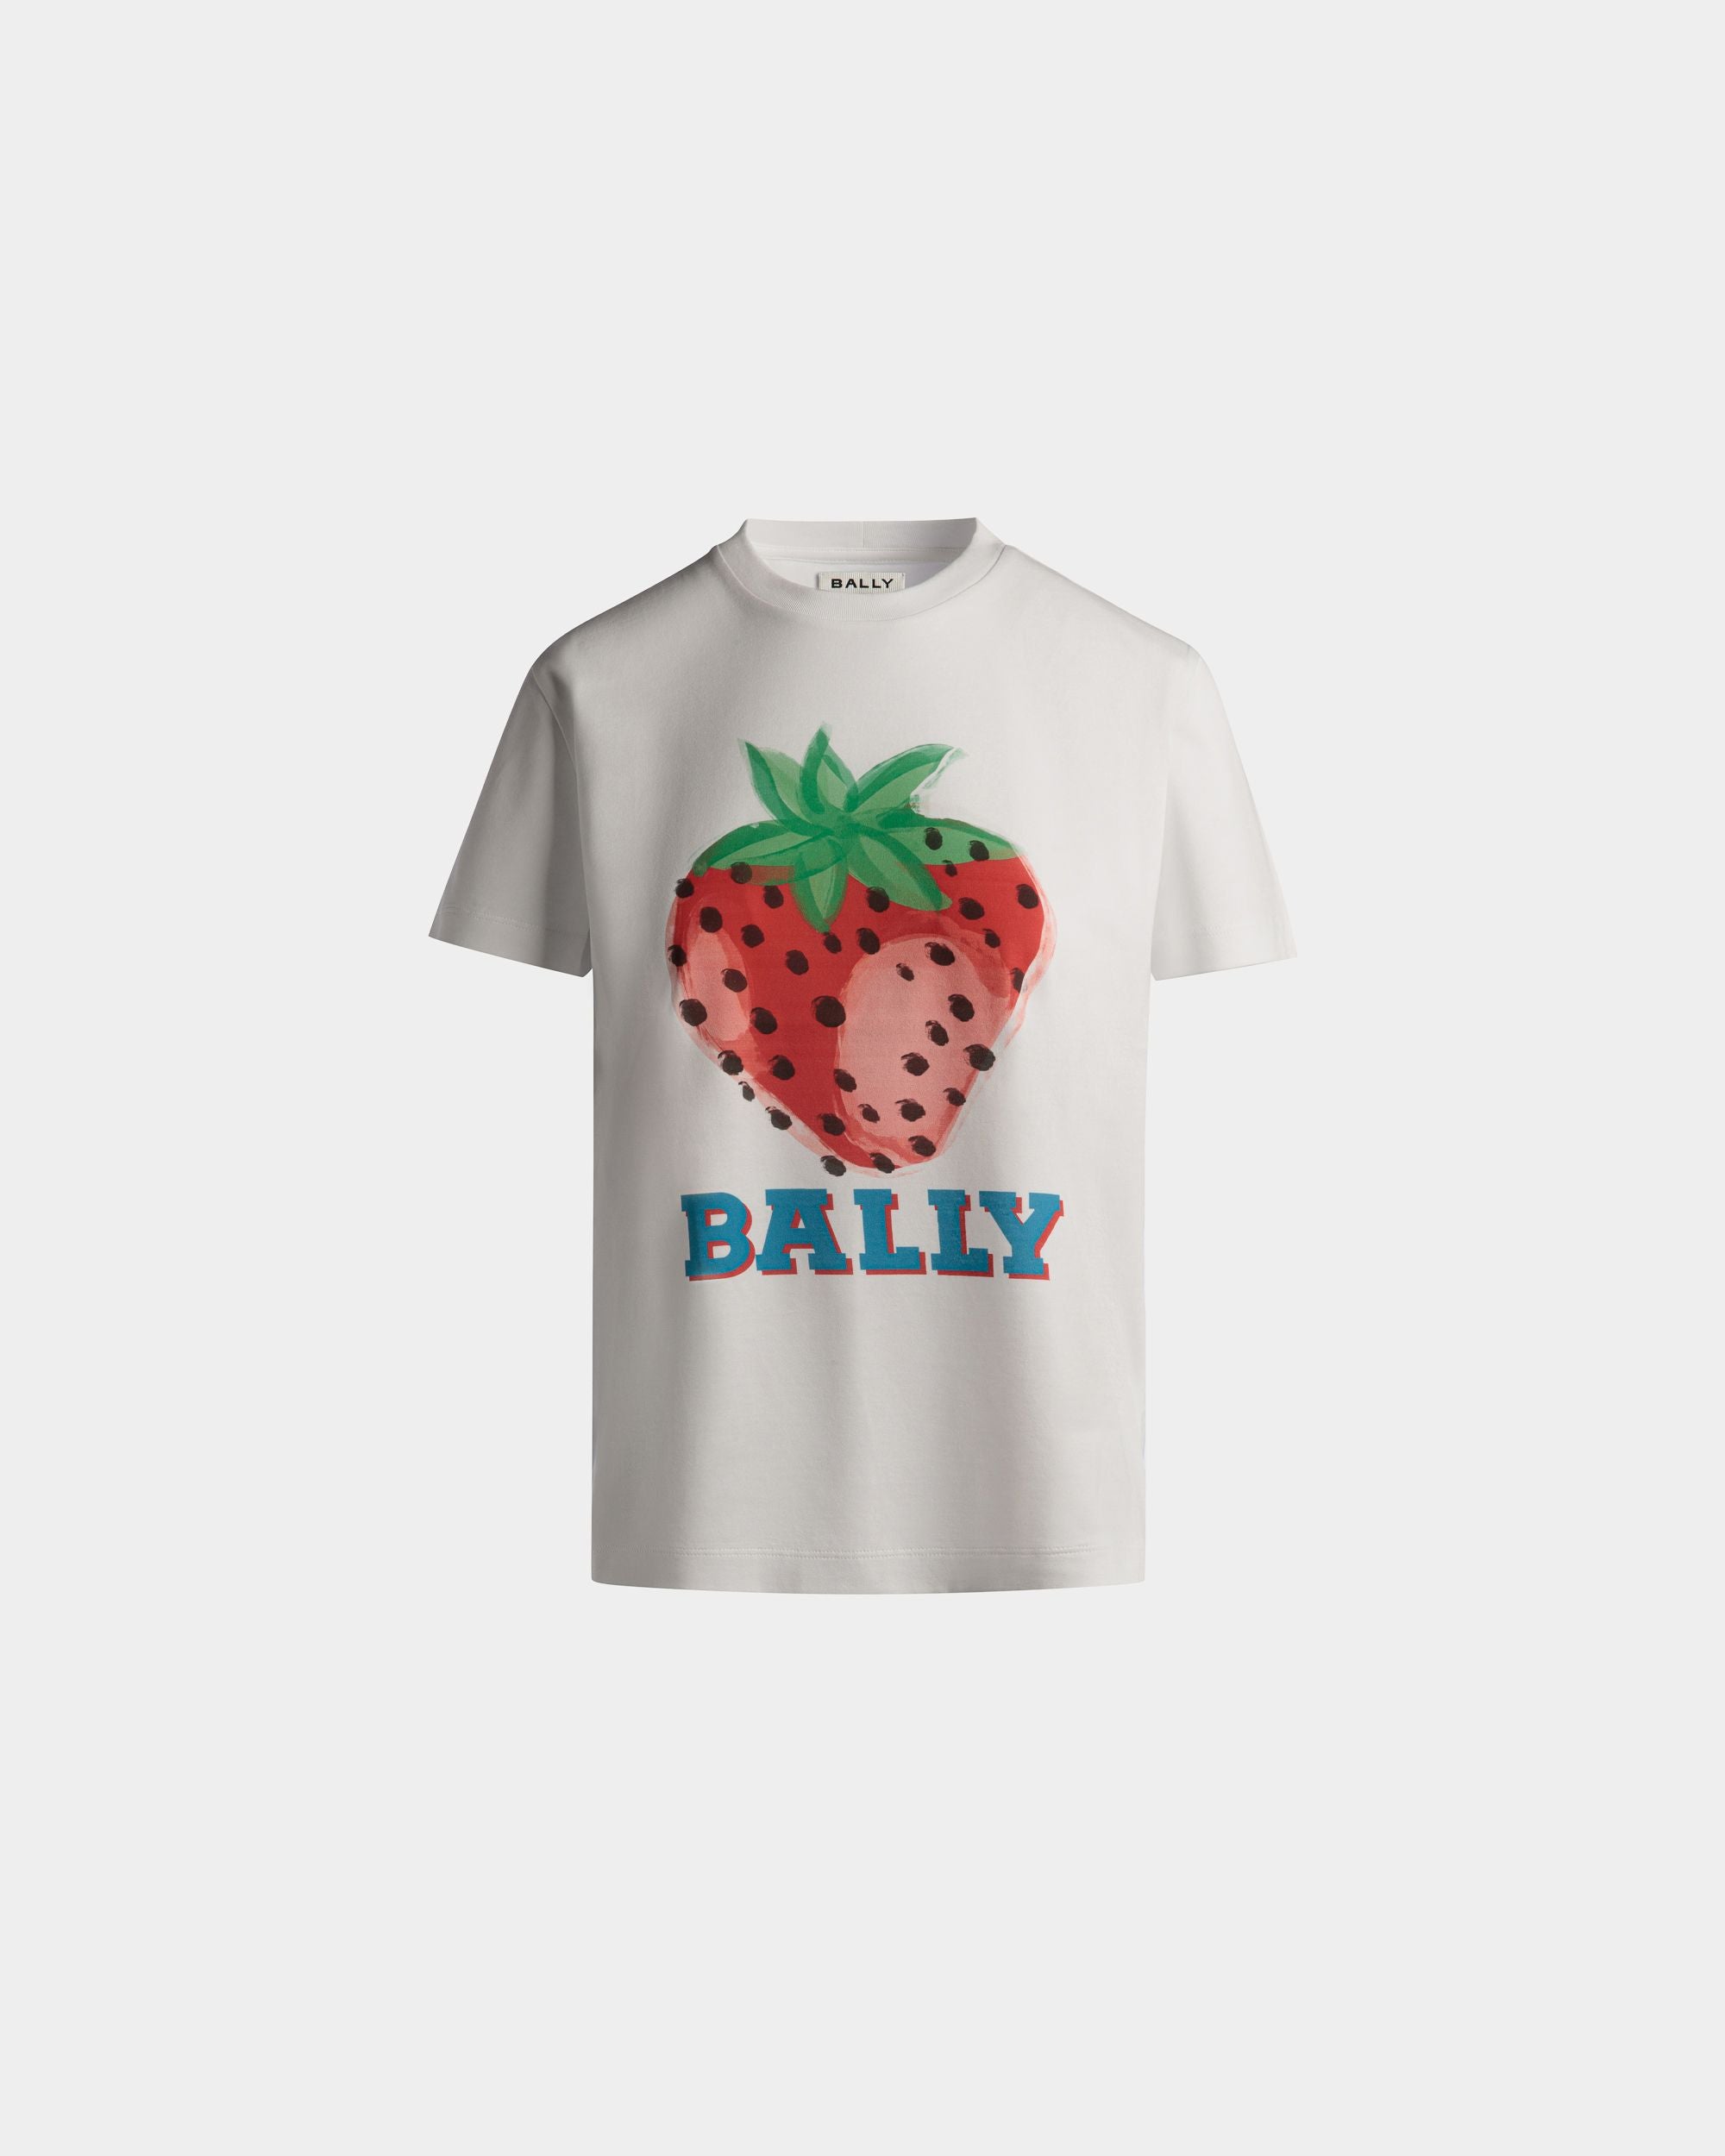 Bedrucktes T-Shirt für Damen aus Baumwolle in Strawberry | Bally | Still Life Vorderseite